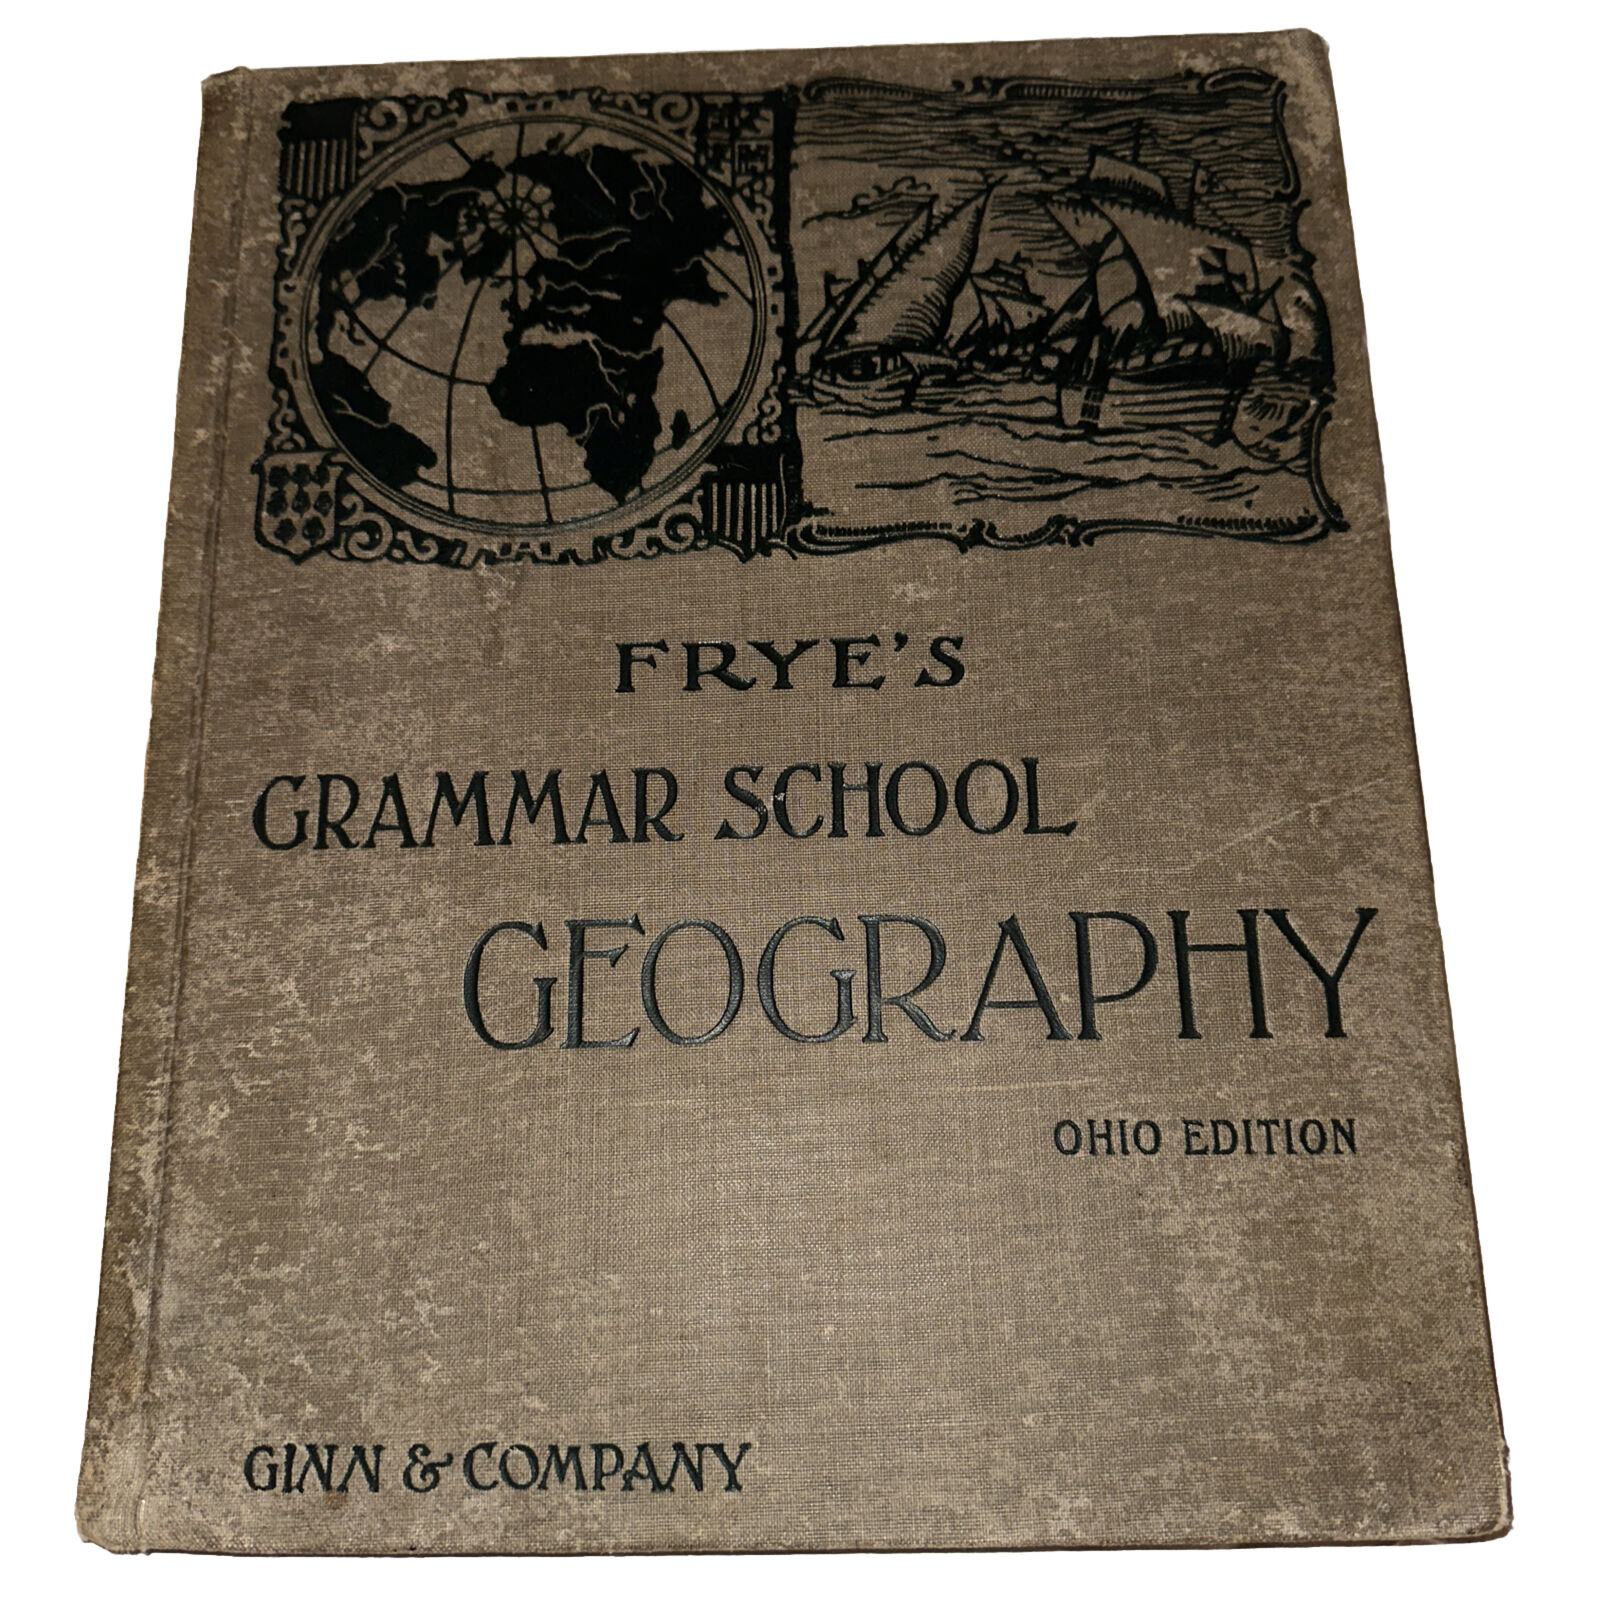 1902 FRYE'S GRAMMAR SCHOOL GEOGRAPHY - Ohio Edition